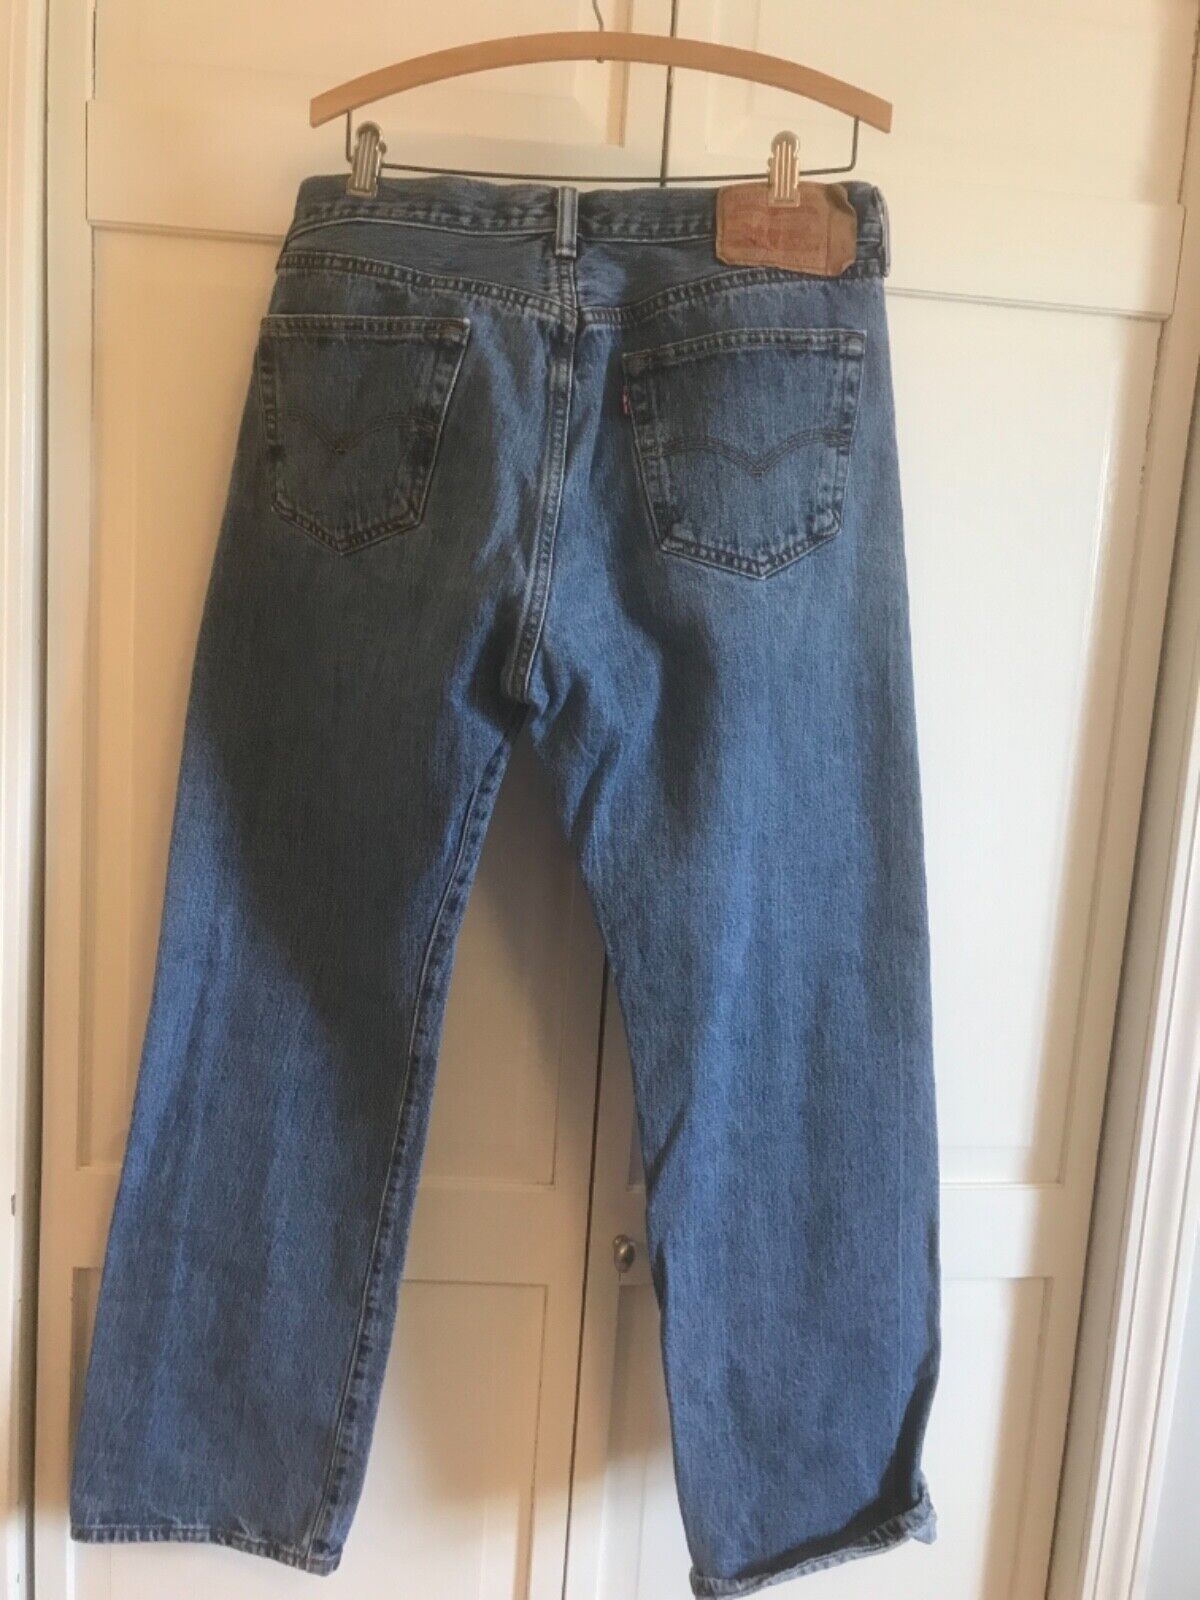 Vintage Levi's 501 Jeans tag 36 x 32 (actual 36 x 30.5)